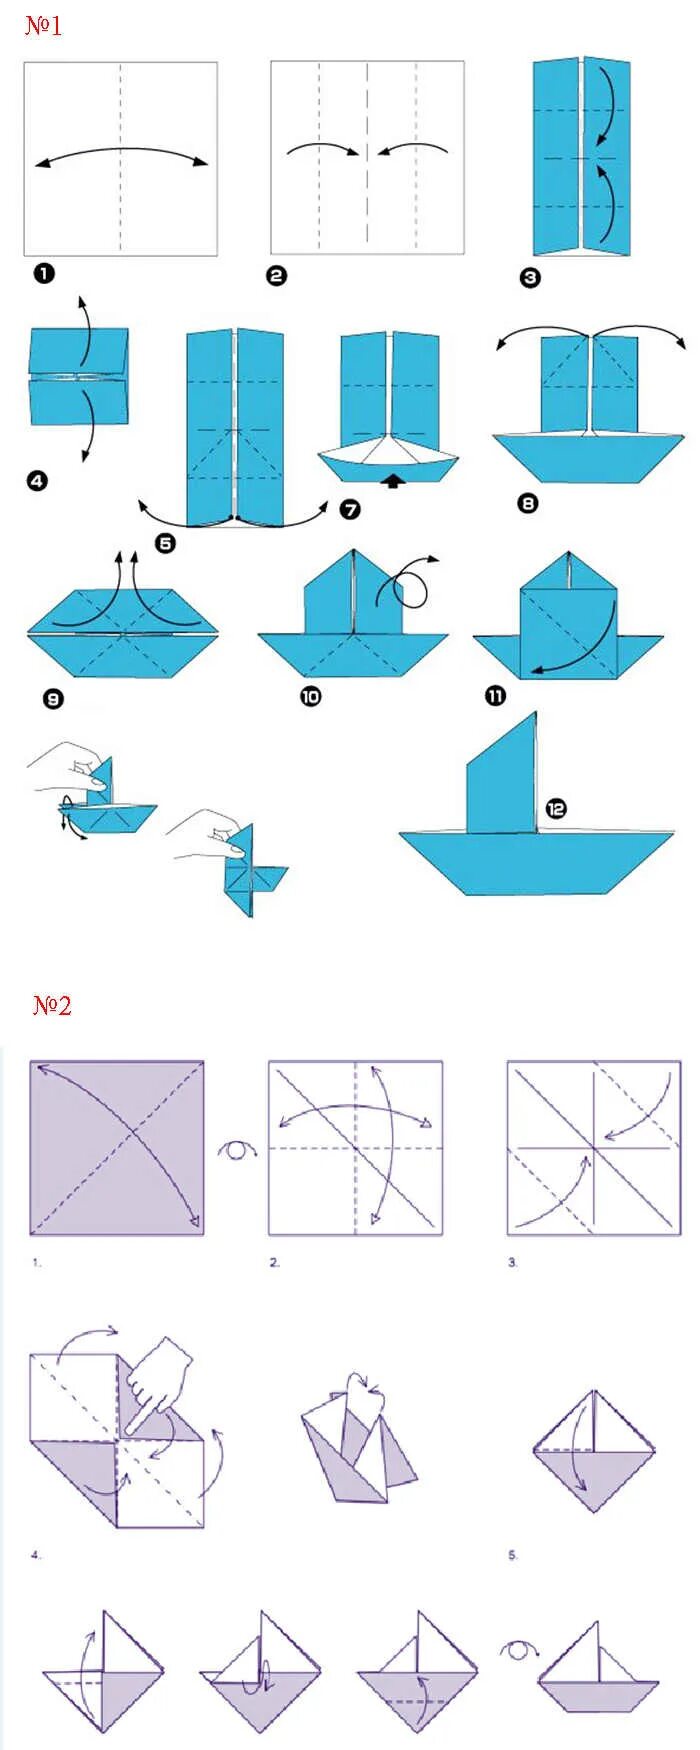 Оригами из бумаги схемы для начинающих кораблик. Как сделать кораблик из бумаги пошаговая инструкция. Как делается кораблик из бумаги а4. Оригами из бумаги кораблик схема поэтапно для детей. Как сделать кораблик поэтапно